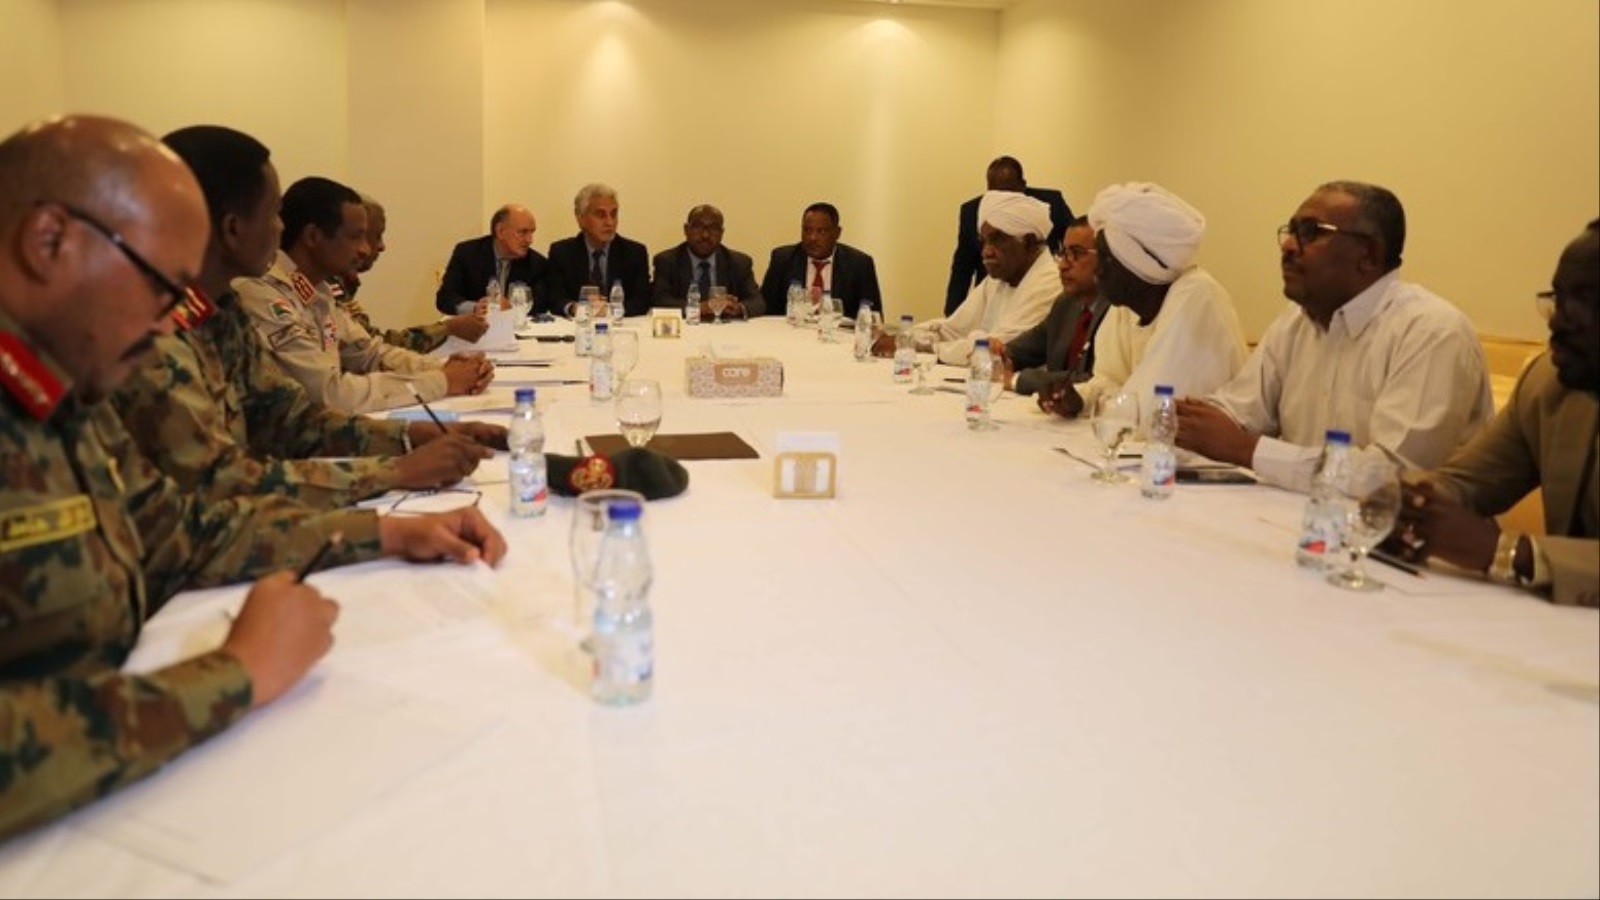 ‪جولة تفاوض سابقة بين المجلس العسكري وقوى التغيير في الخرطوم بشأن كيفية تقاسم السلطة وإدارة المرحلة الانتقالية‬ (الأوروبية)